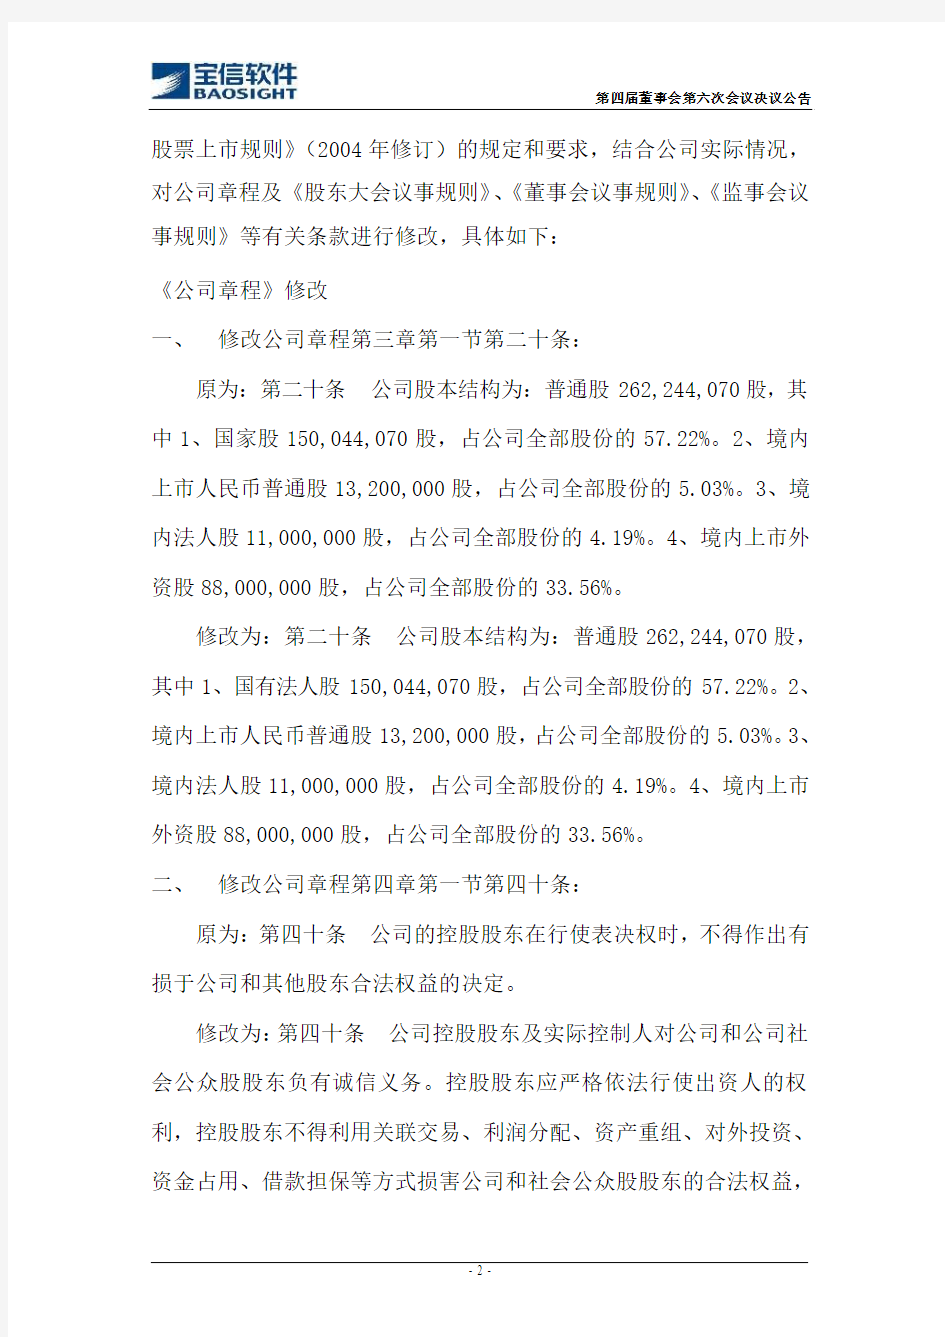 上海宝信软件股份有限公司